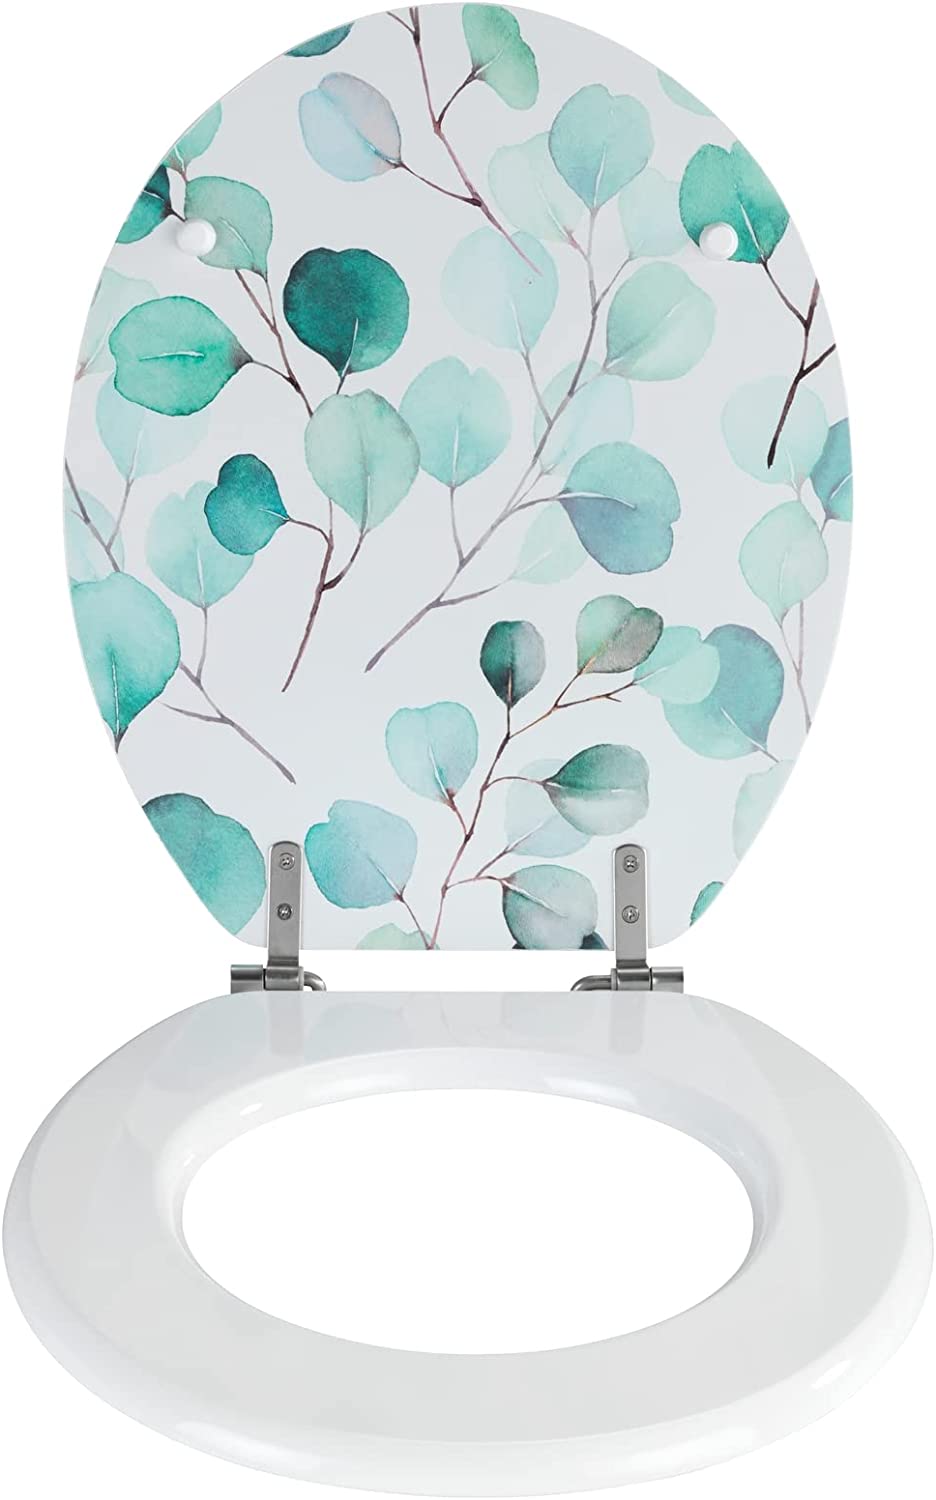 WC-Sitz Pioppo, Toilettensitz aus MDF, FSC® zertifiziert, mit schwerer rostfreier Edelstahl-Befestigung und Deckel mit ansprechendem Blätter-Motiv in Grün-Tönen, (B x T): 35,5 x 42,5 cm